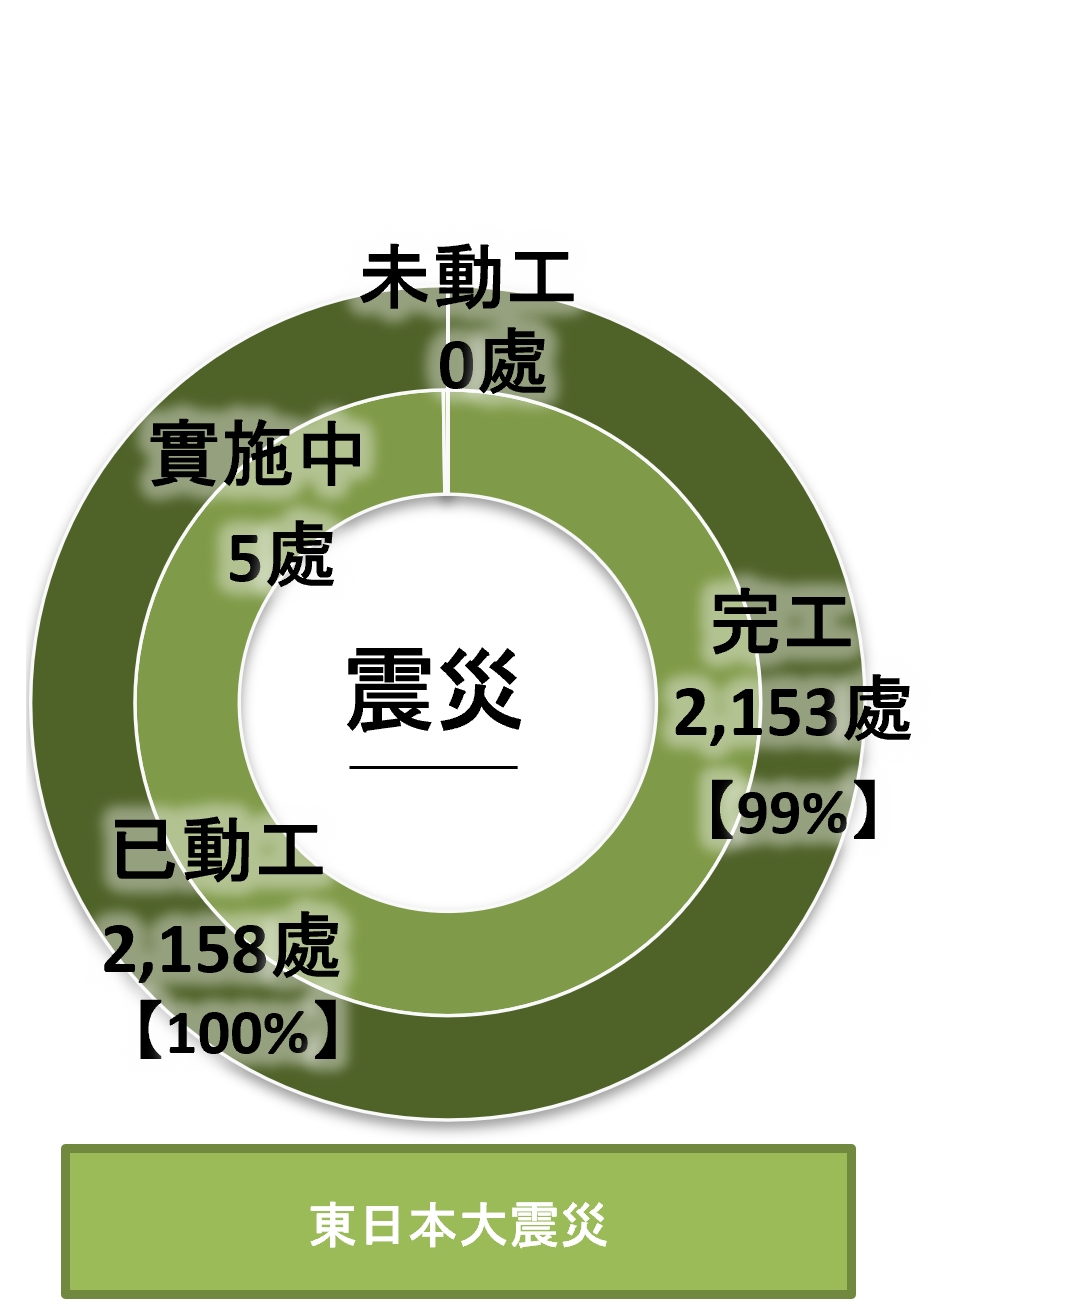 因東日本大震災而受災的福島縣公共土木設施災害修復工程進展，如下表所示。（2023年3月31日當前匯整）